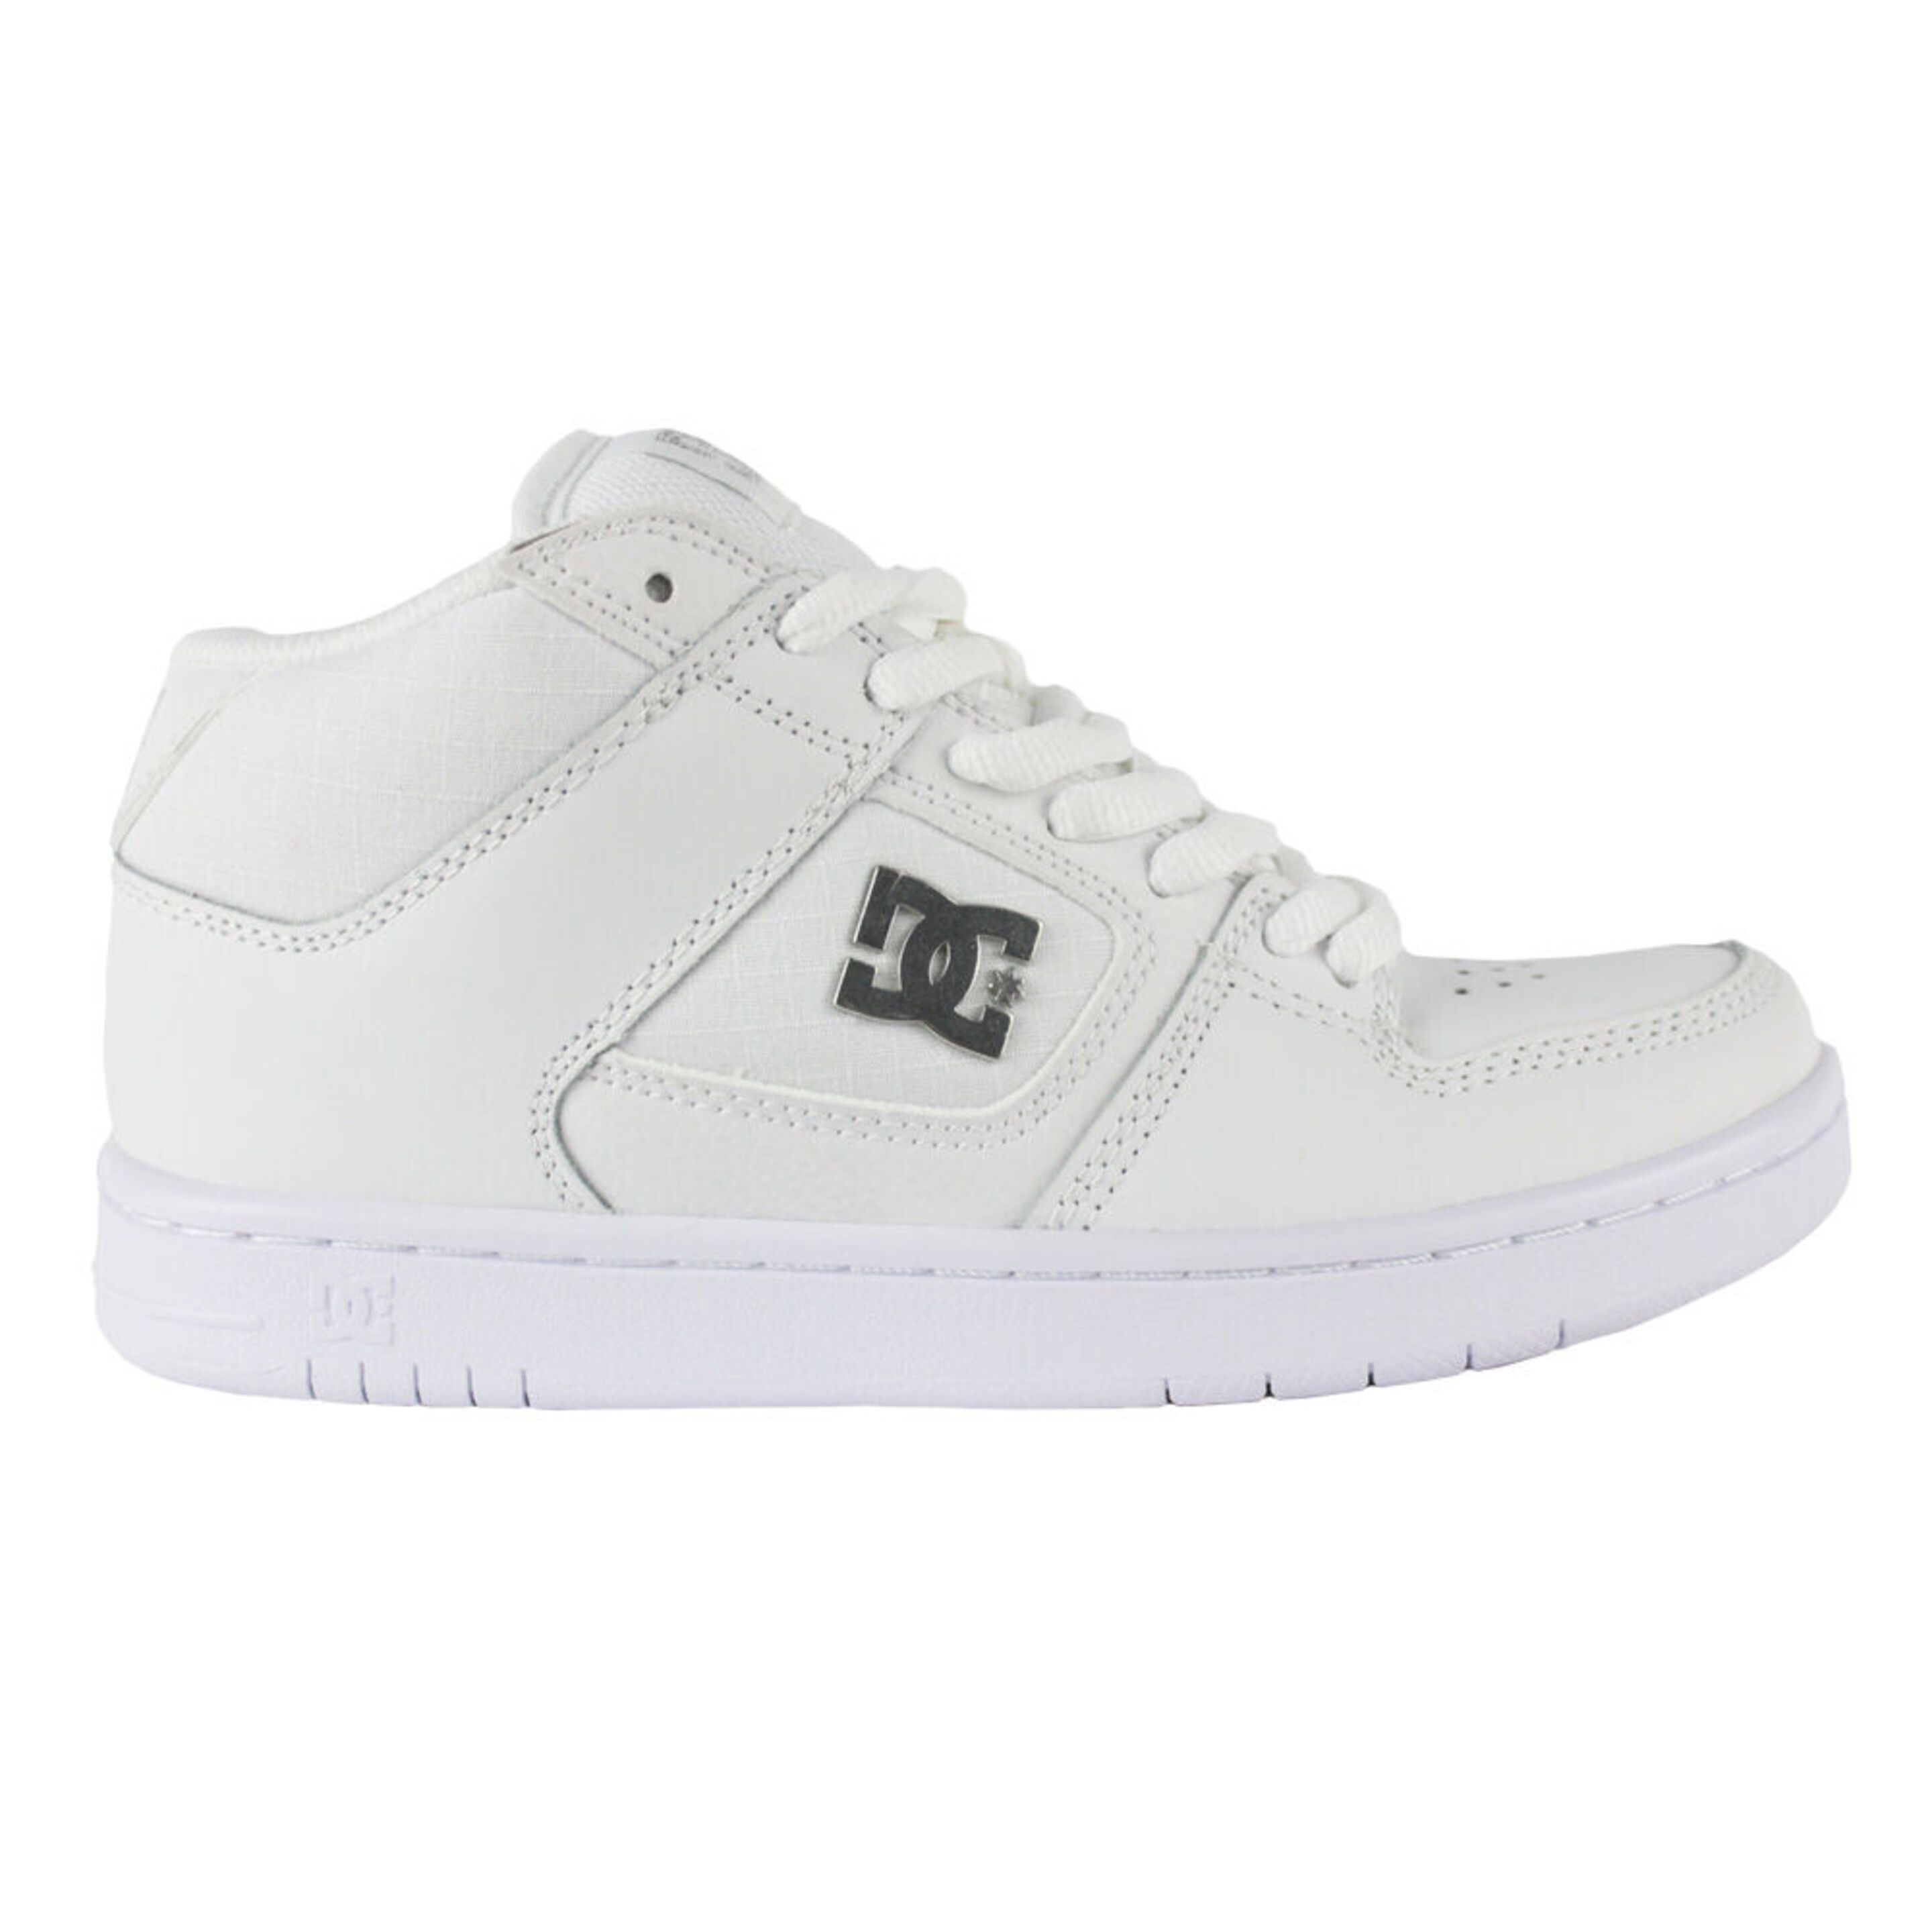 Zapatillas Dc Shoes Manteca 4 - blanco - 